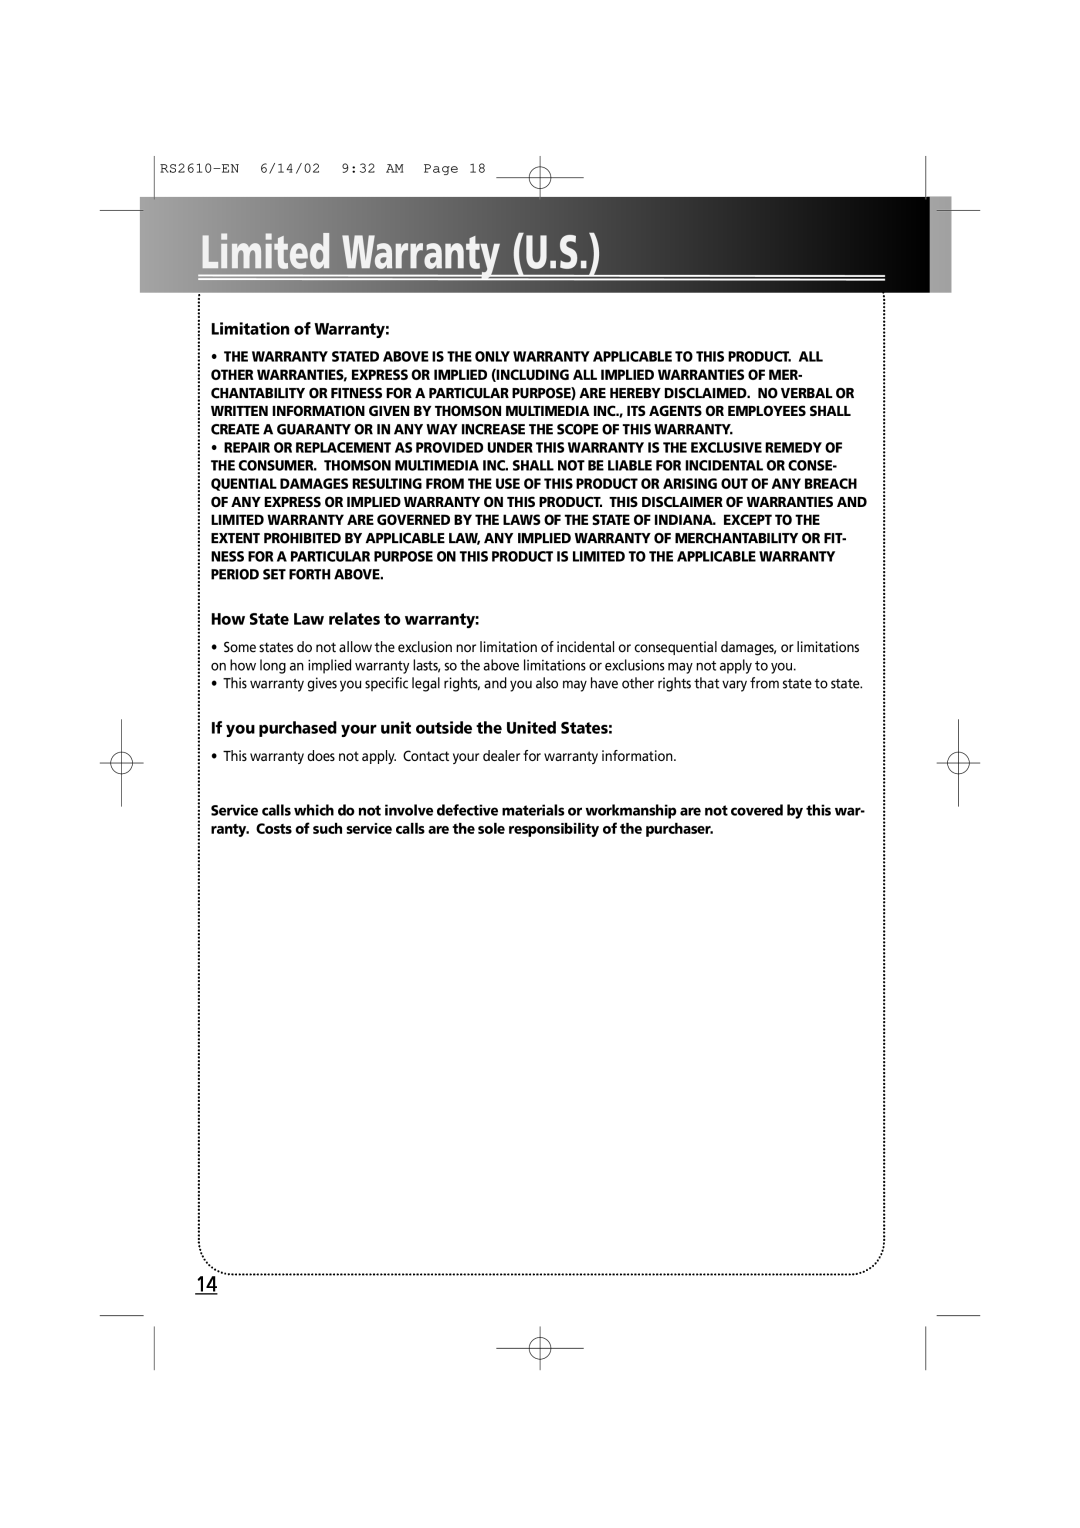 RCA fm radio tuner manual Limited Warranty U.S, Limitation of Warranty, How State Law relates to warranty 